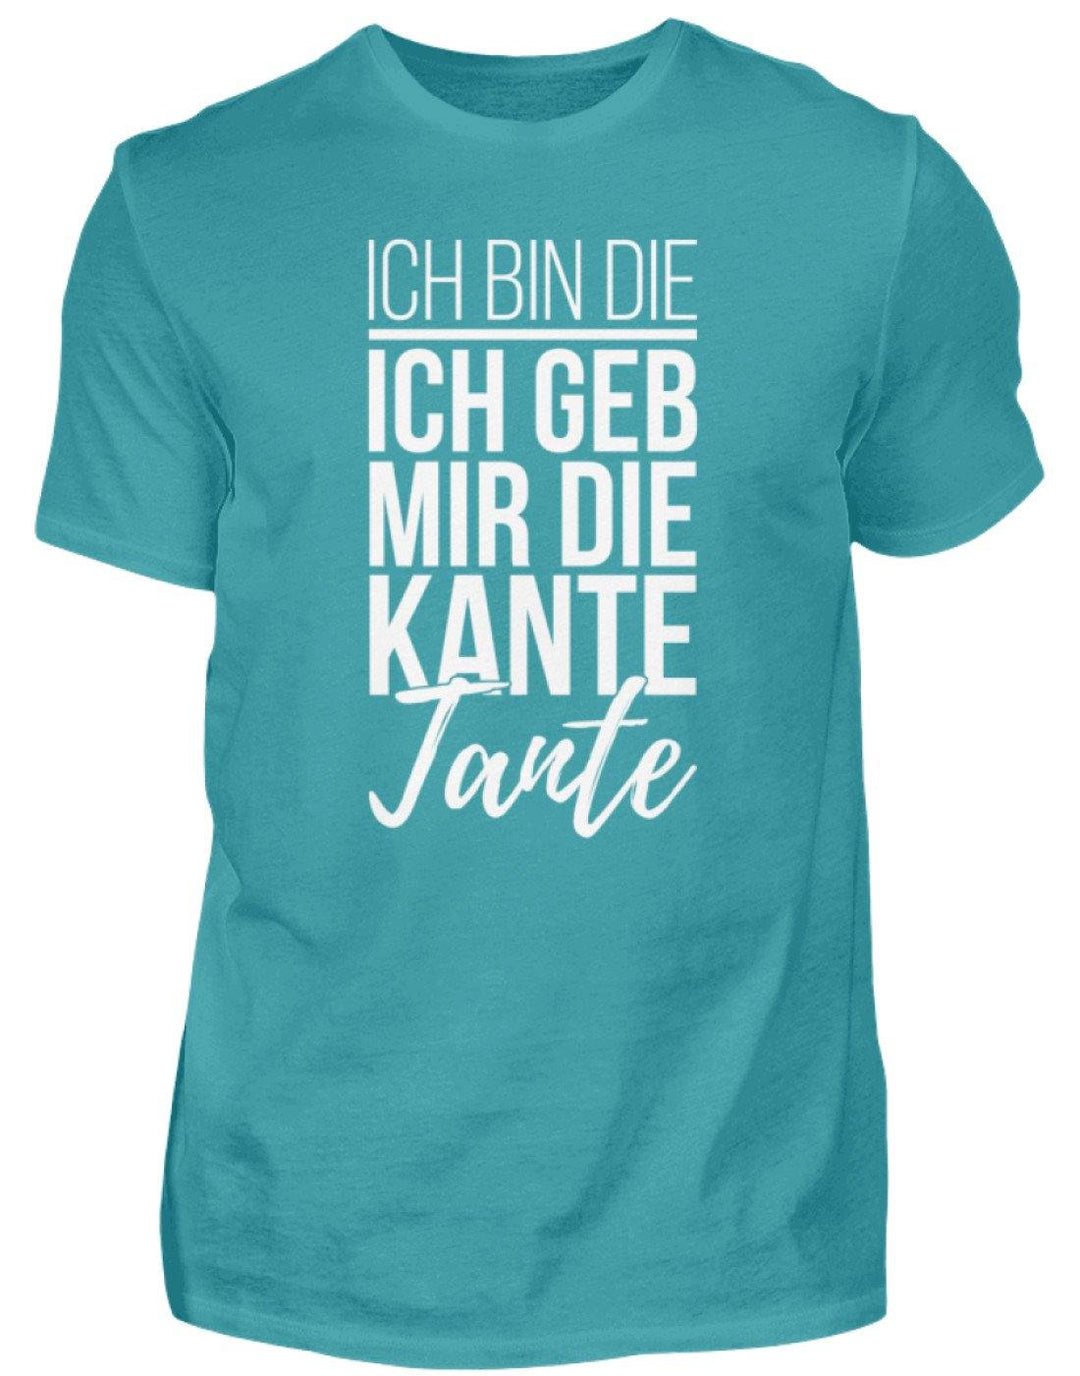 Kante Tante - Words on Shirts  - Herren Shirt - Words on Shirts Sag es mit dem Mittelfinger Shirts Hoodies Sweatshirt Taschen Gymsack Spruch Sprüche Statement